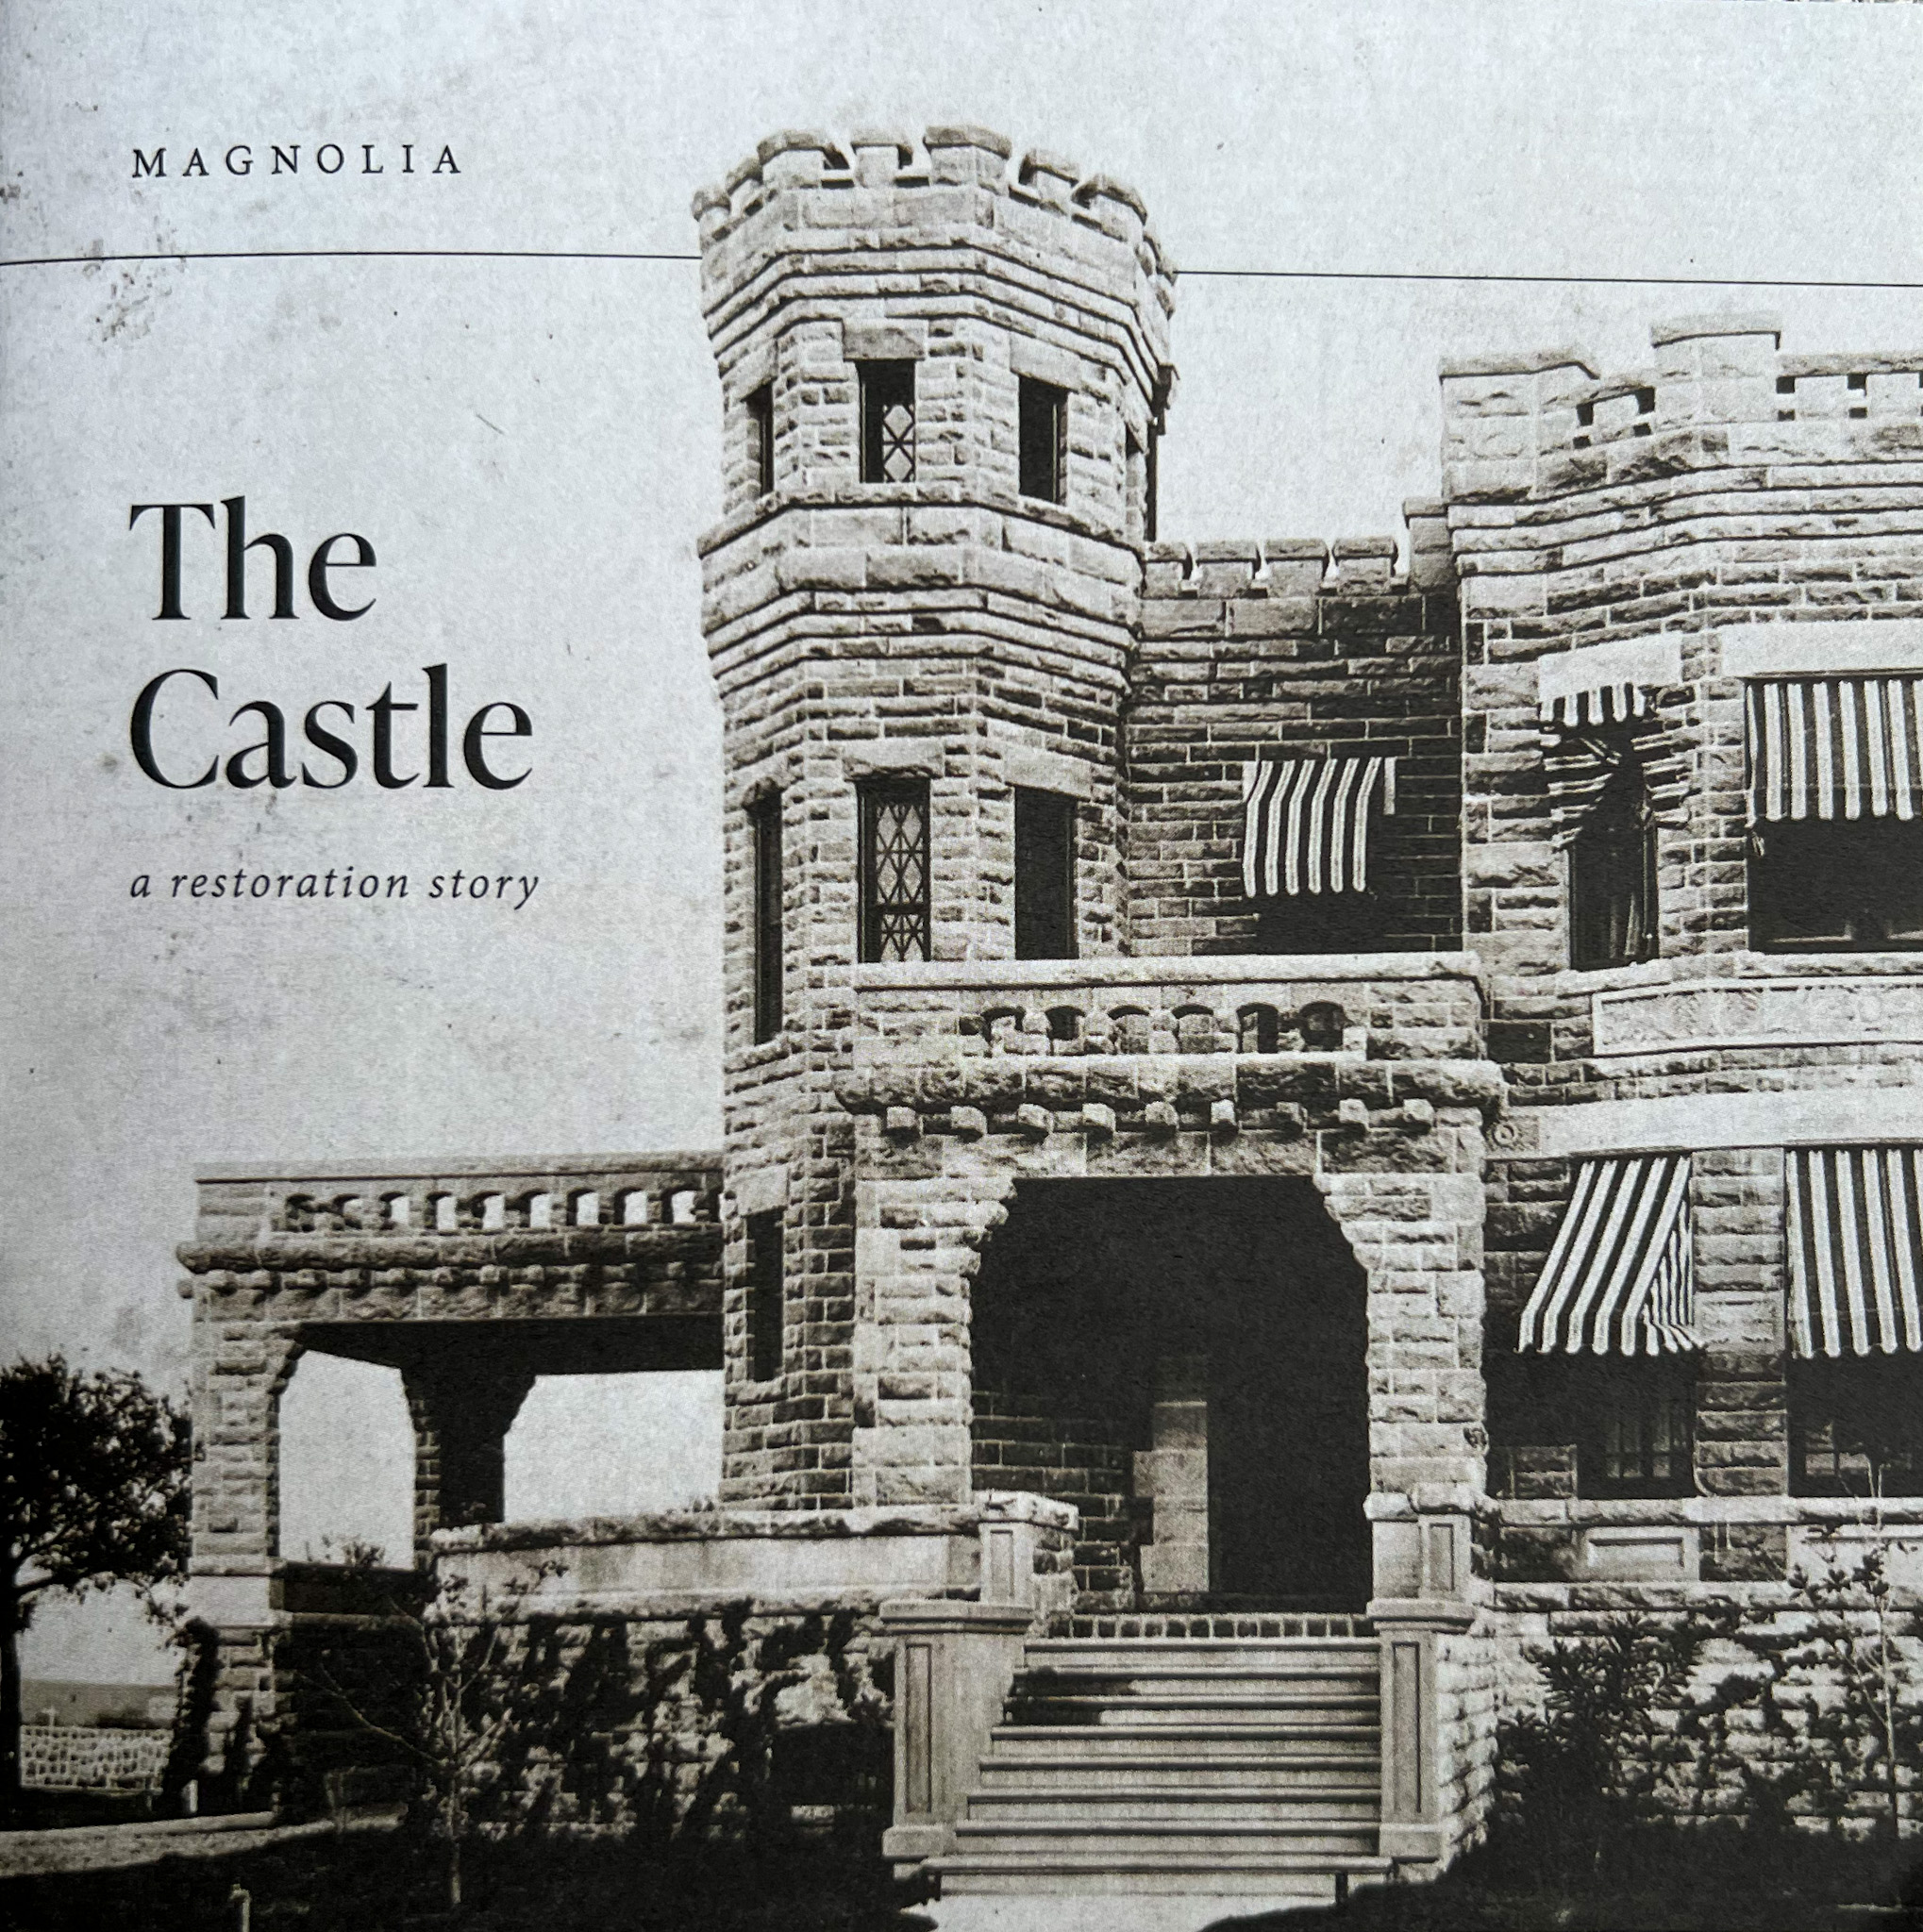 Magnolia's Castle in Waco, TX